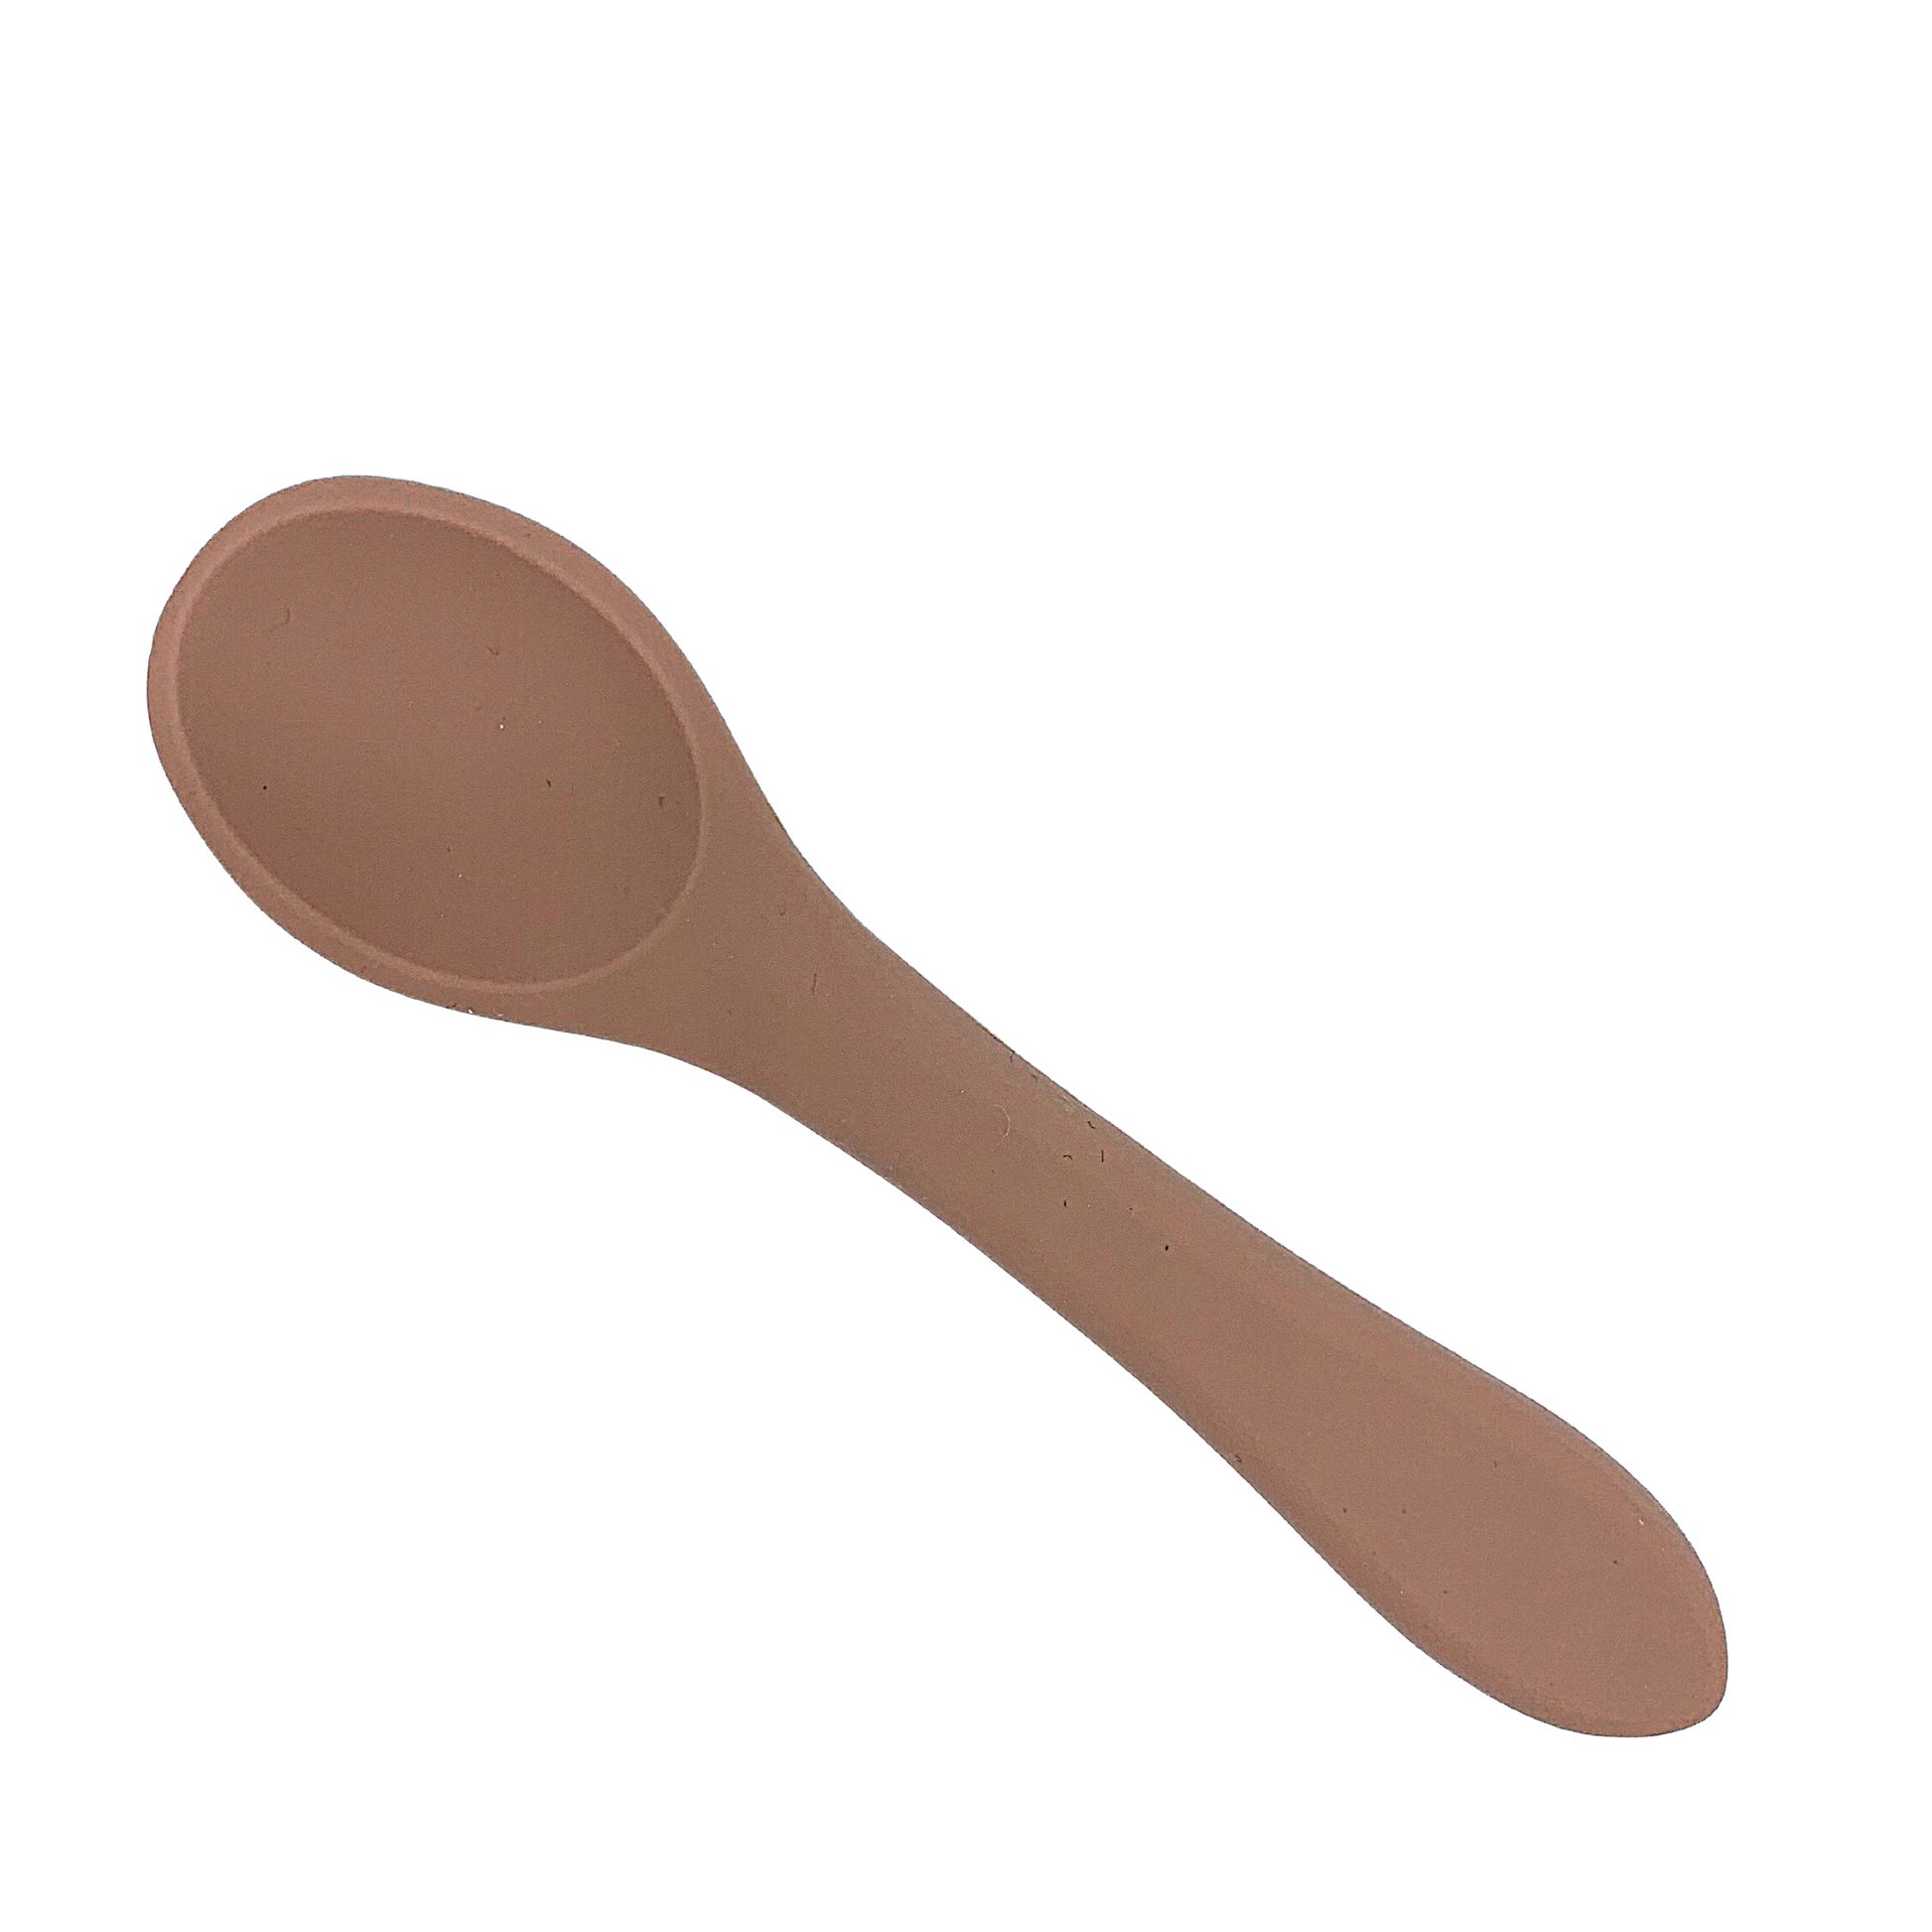 Blush silicone feeding spoon